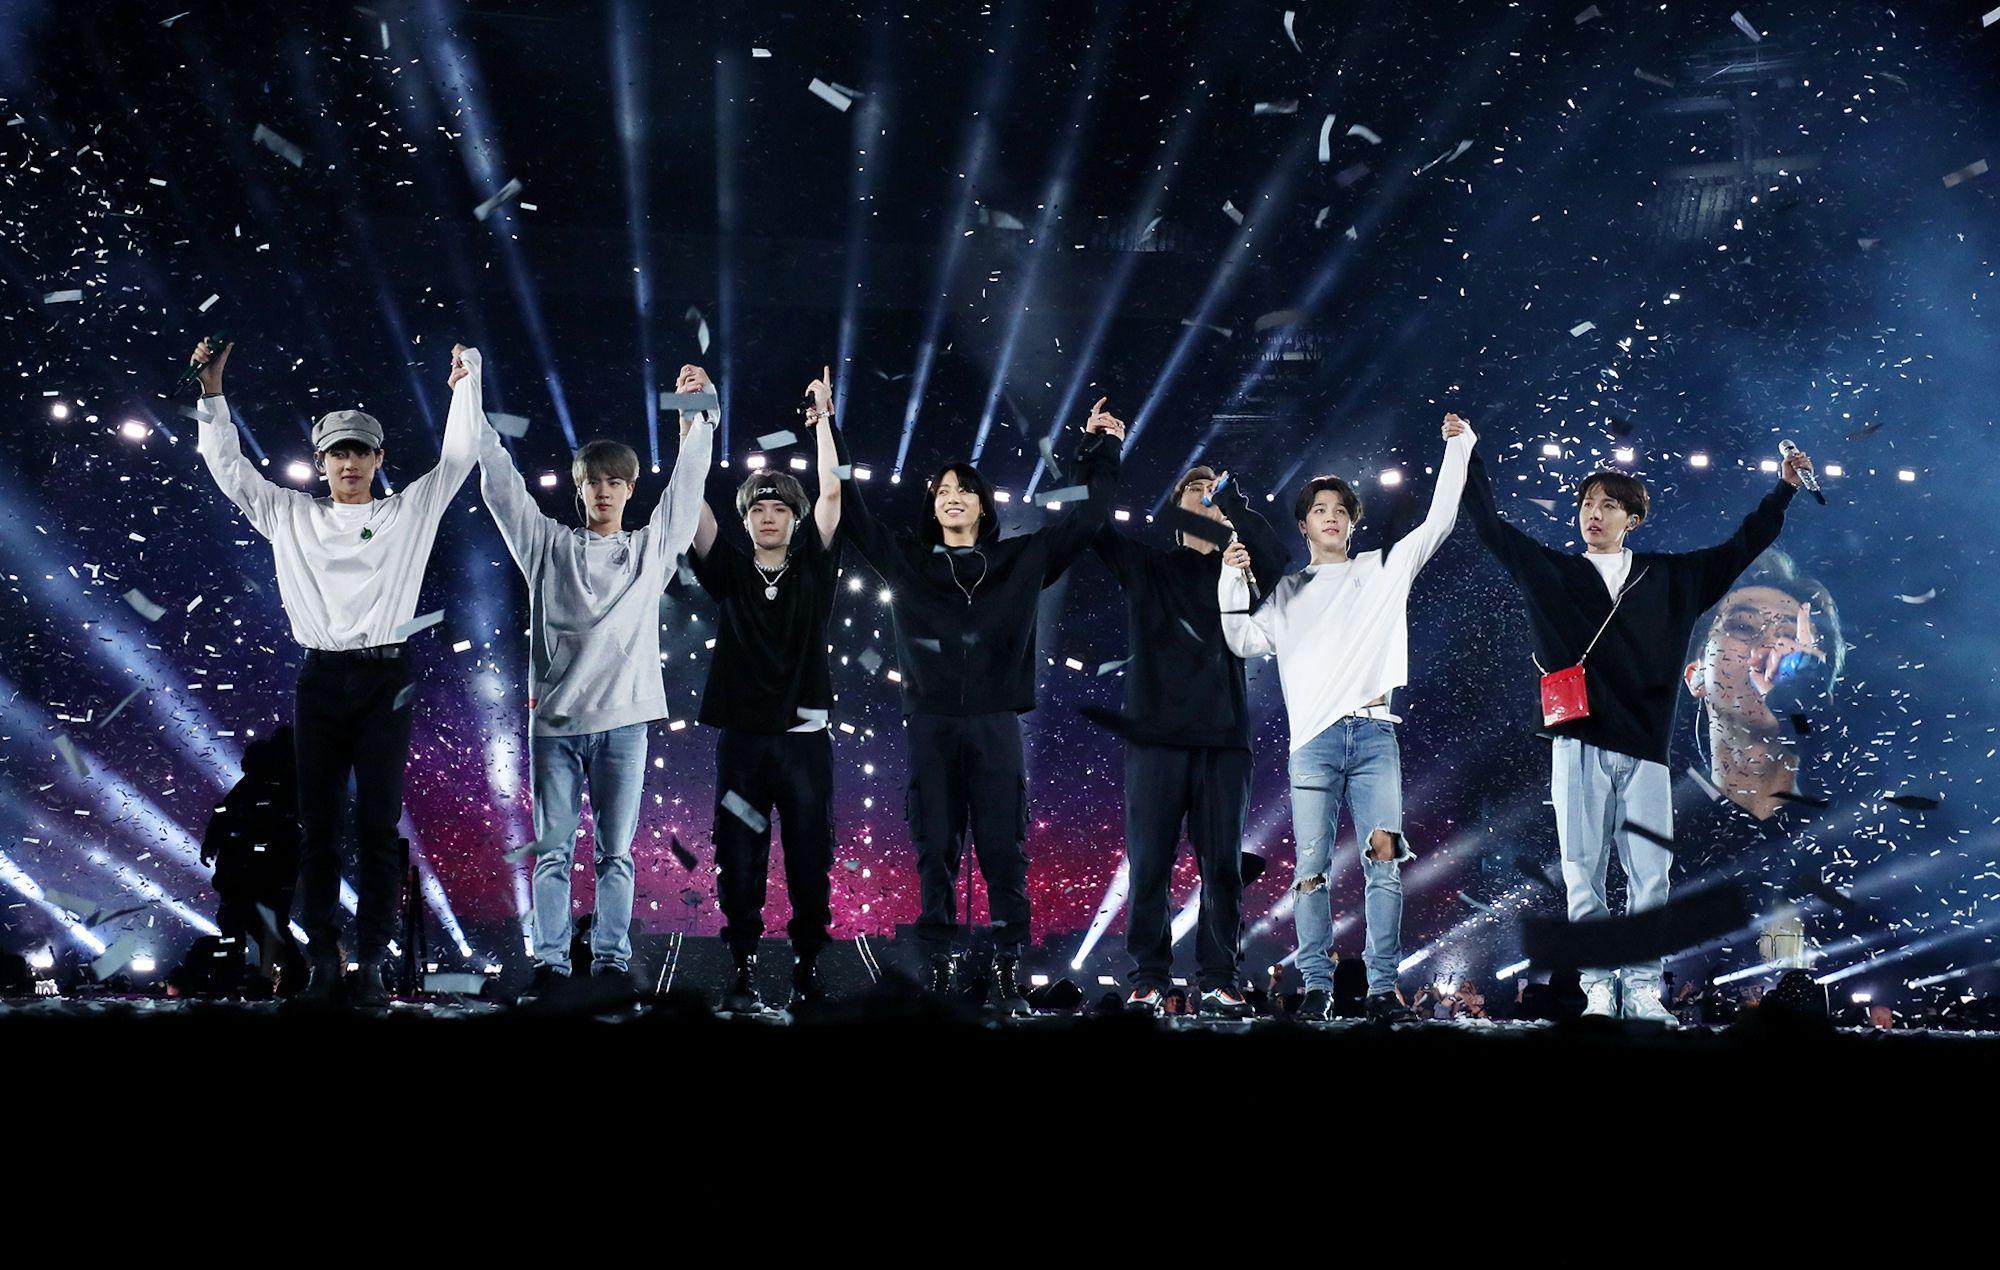 BTS Concert Wallpapers Top 10 Best BTS Concert iPhone Wallpapers  HQ 